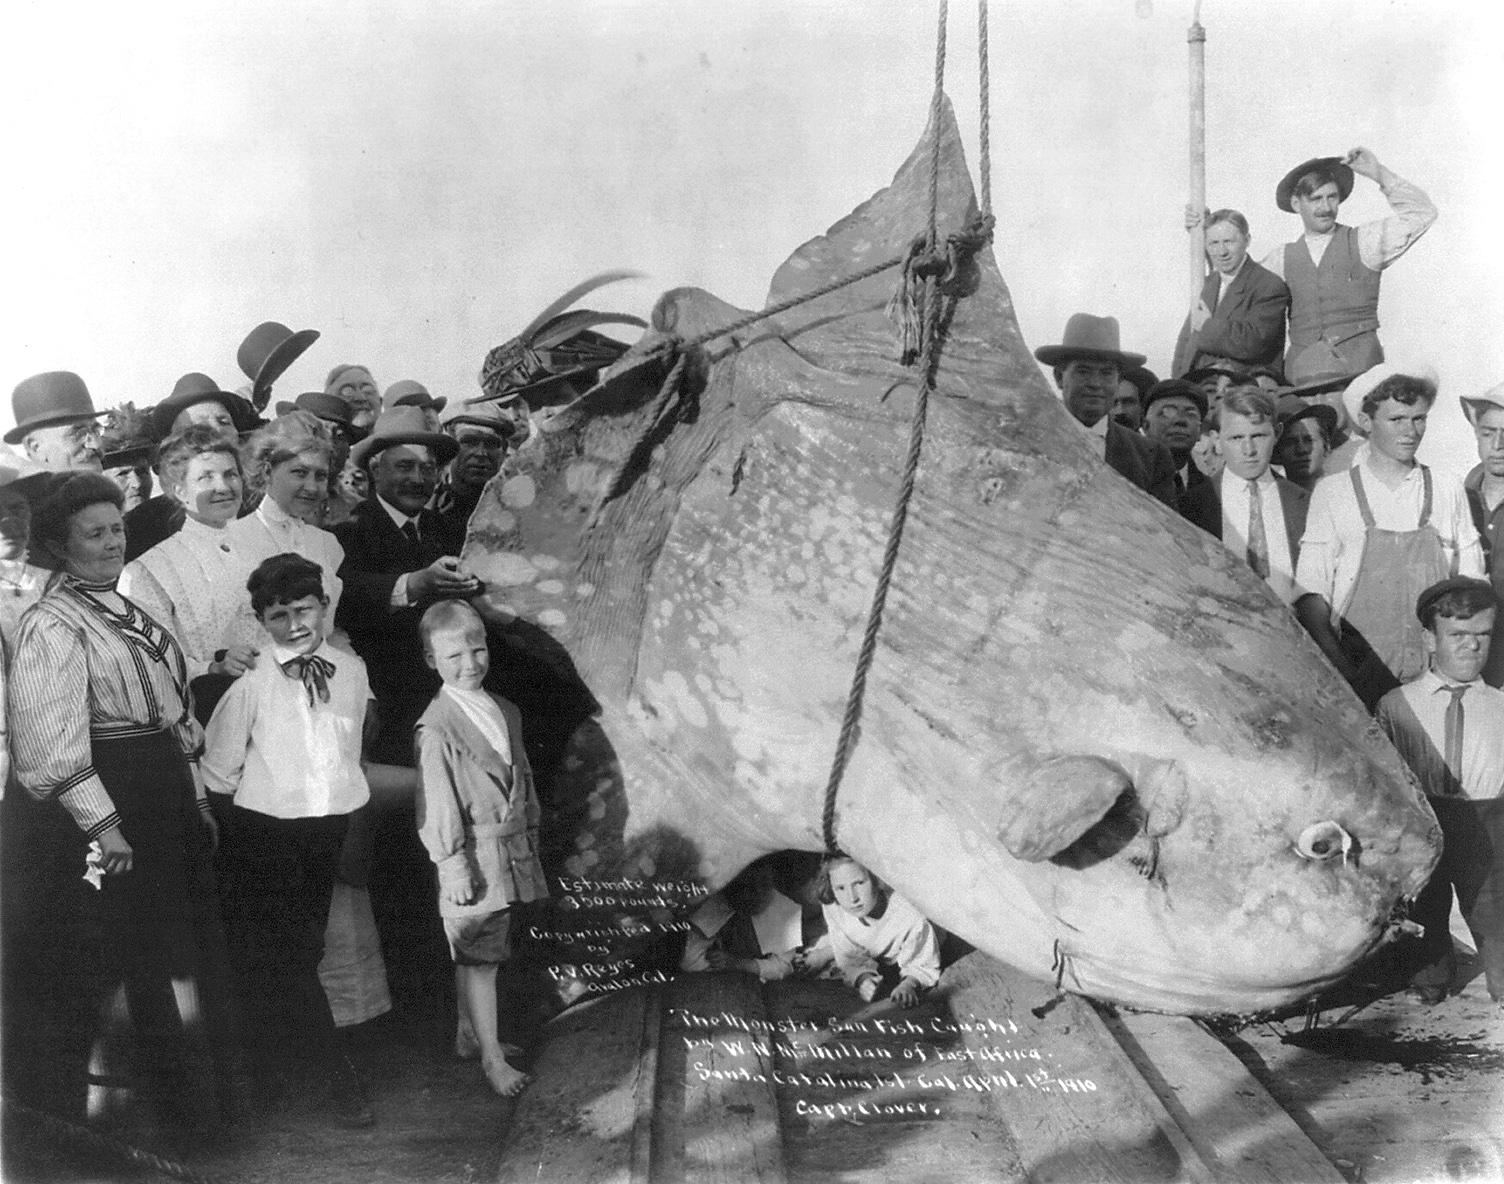 Mola mola de près de 2 tonnes pêché en 1910... 1 premier avril